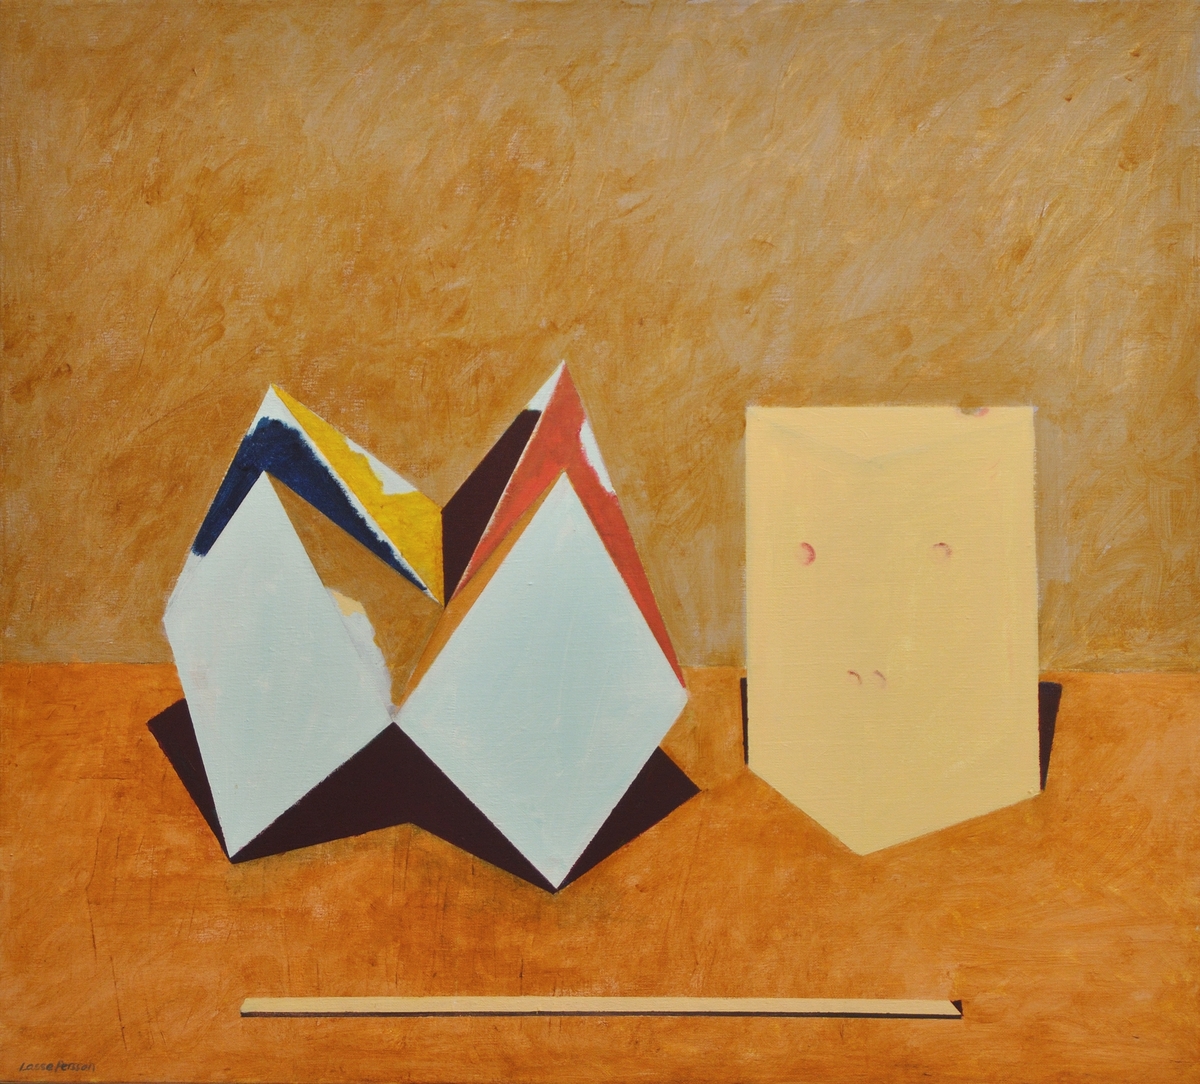 Tavla med spännram. Akryl på duk. "Tre udda ting" 1986. Från höger avbildande en gul ost, en blå-röd-gul-brun loppfångare, och i bildens nederkant en gul ribba. De geometriskt uppbyggda föremålen står på brun yta. Fonden ljusbrun.